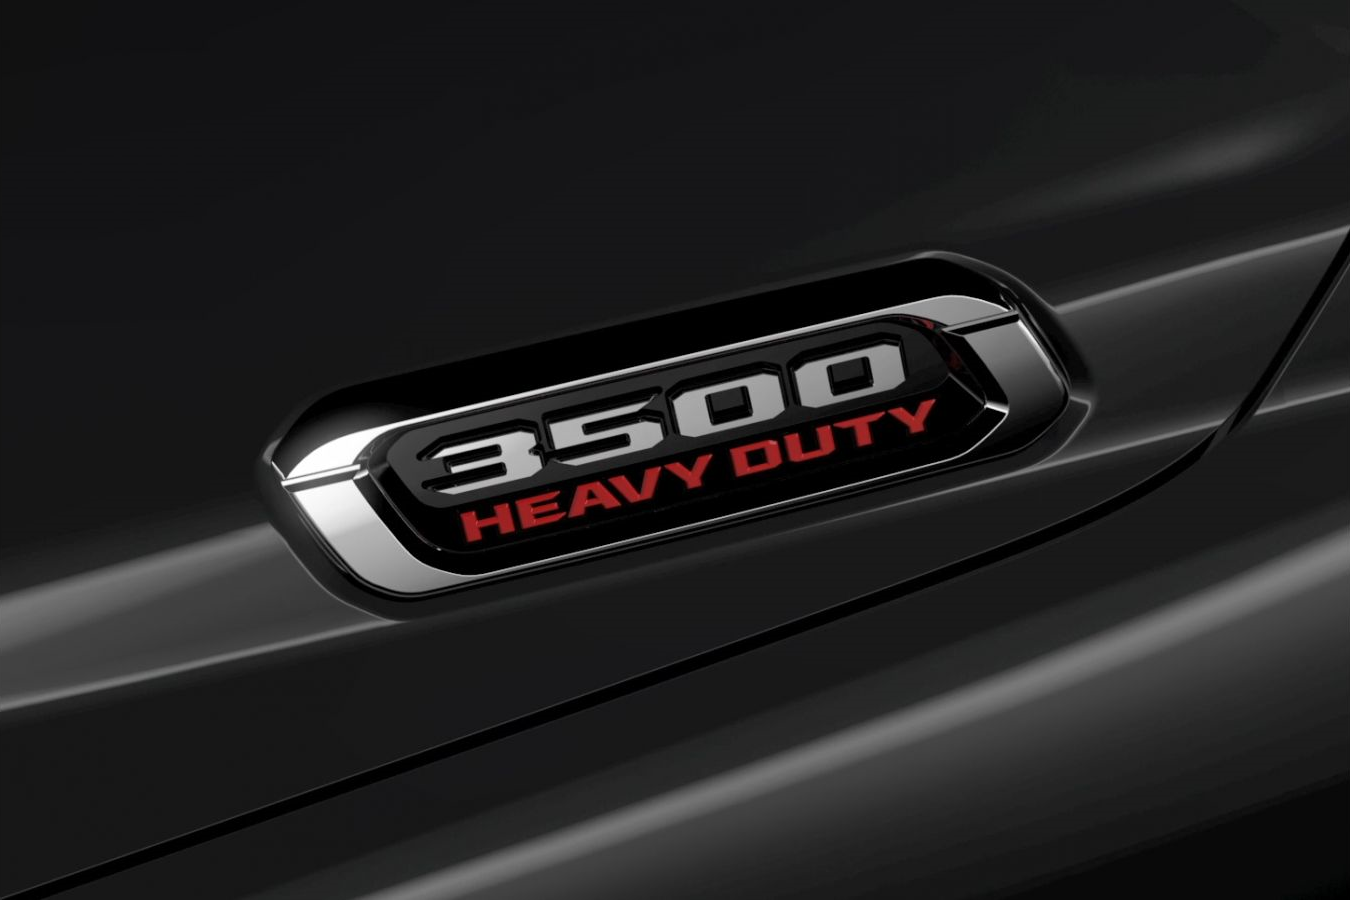 Ram confirma: novo modelo da marca será a 3500